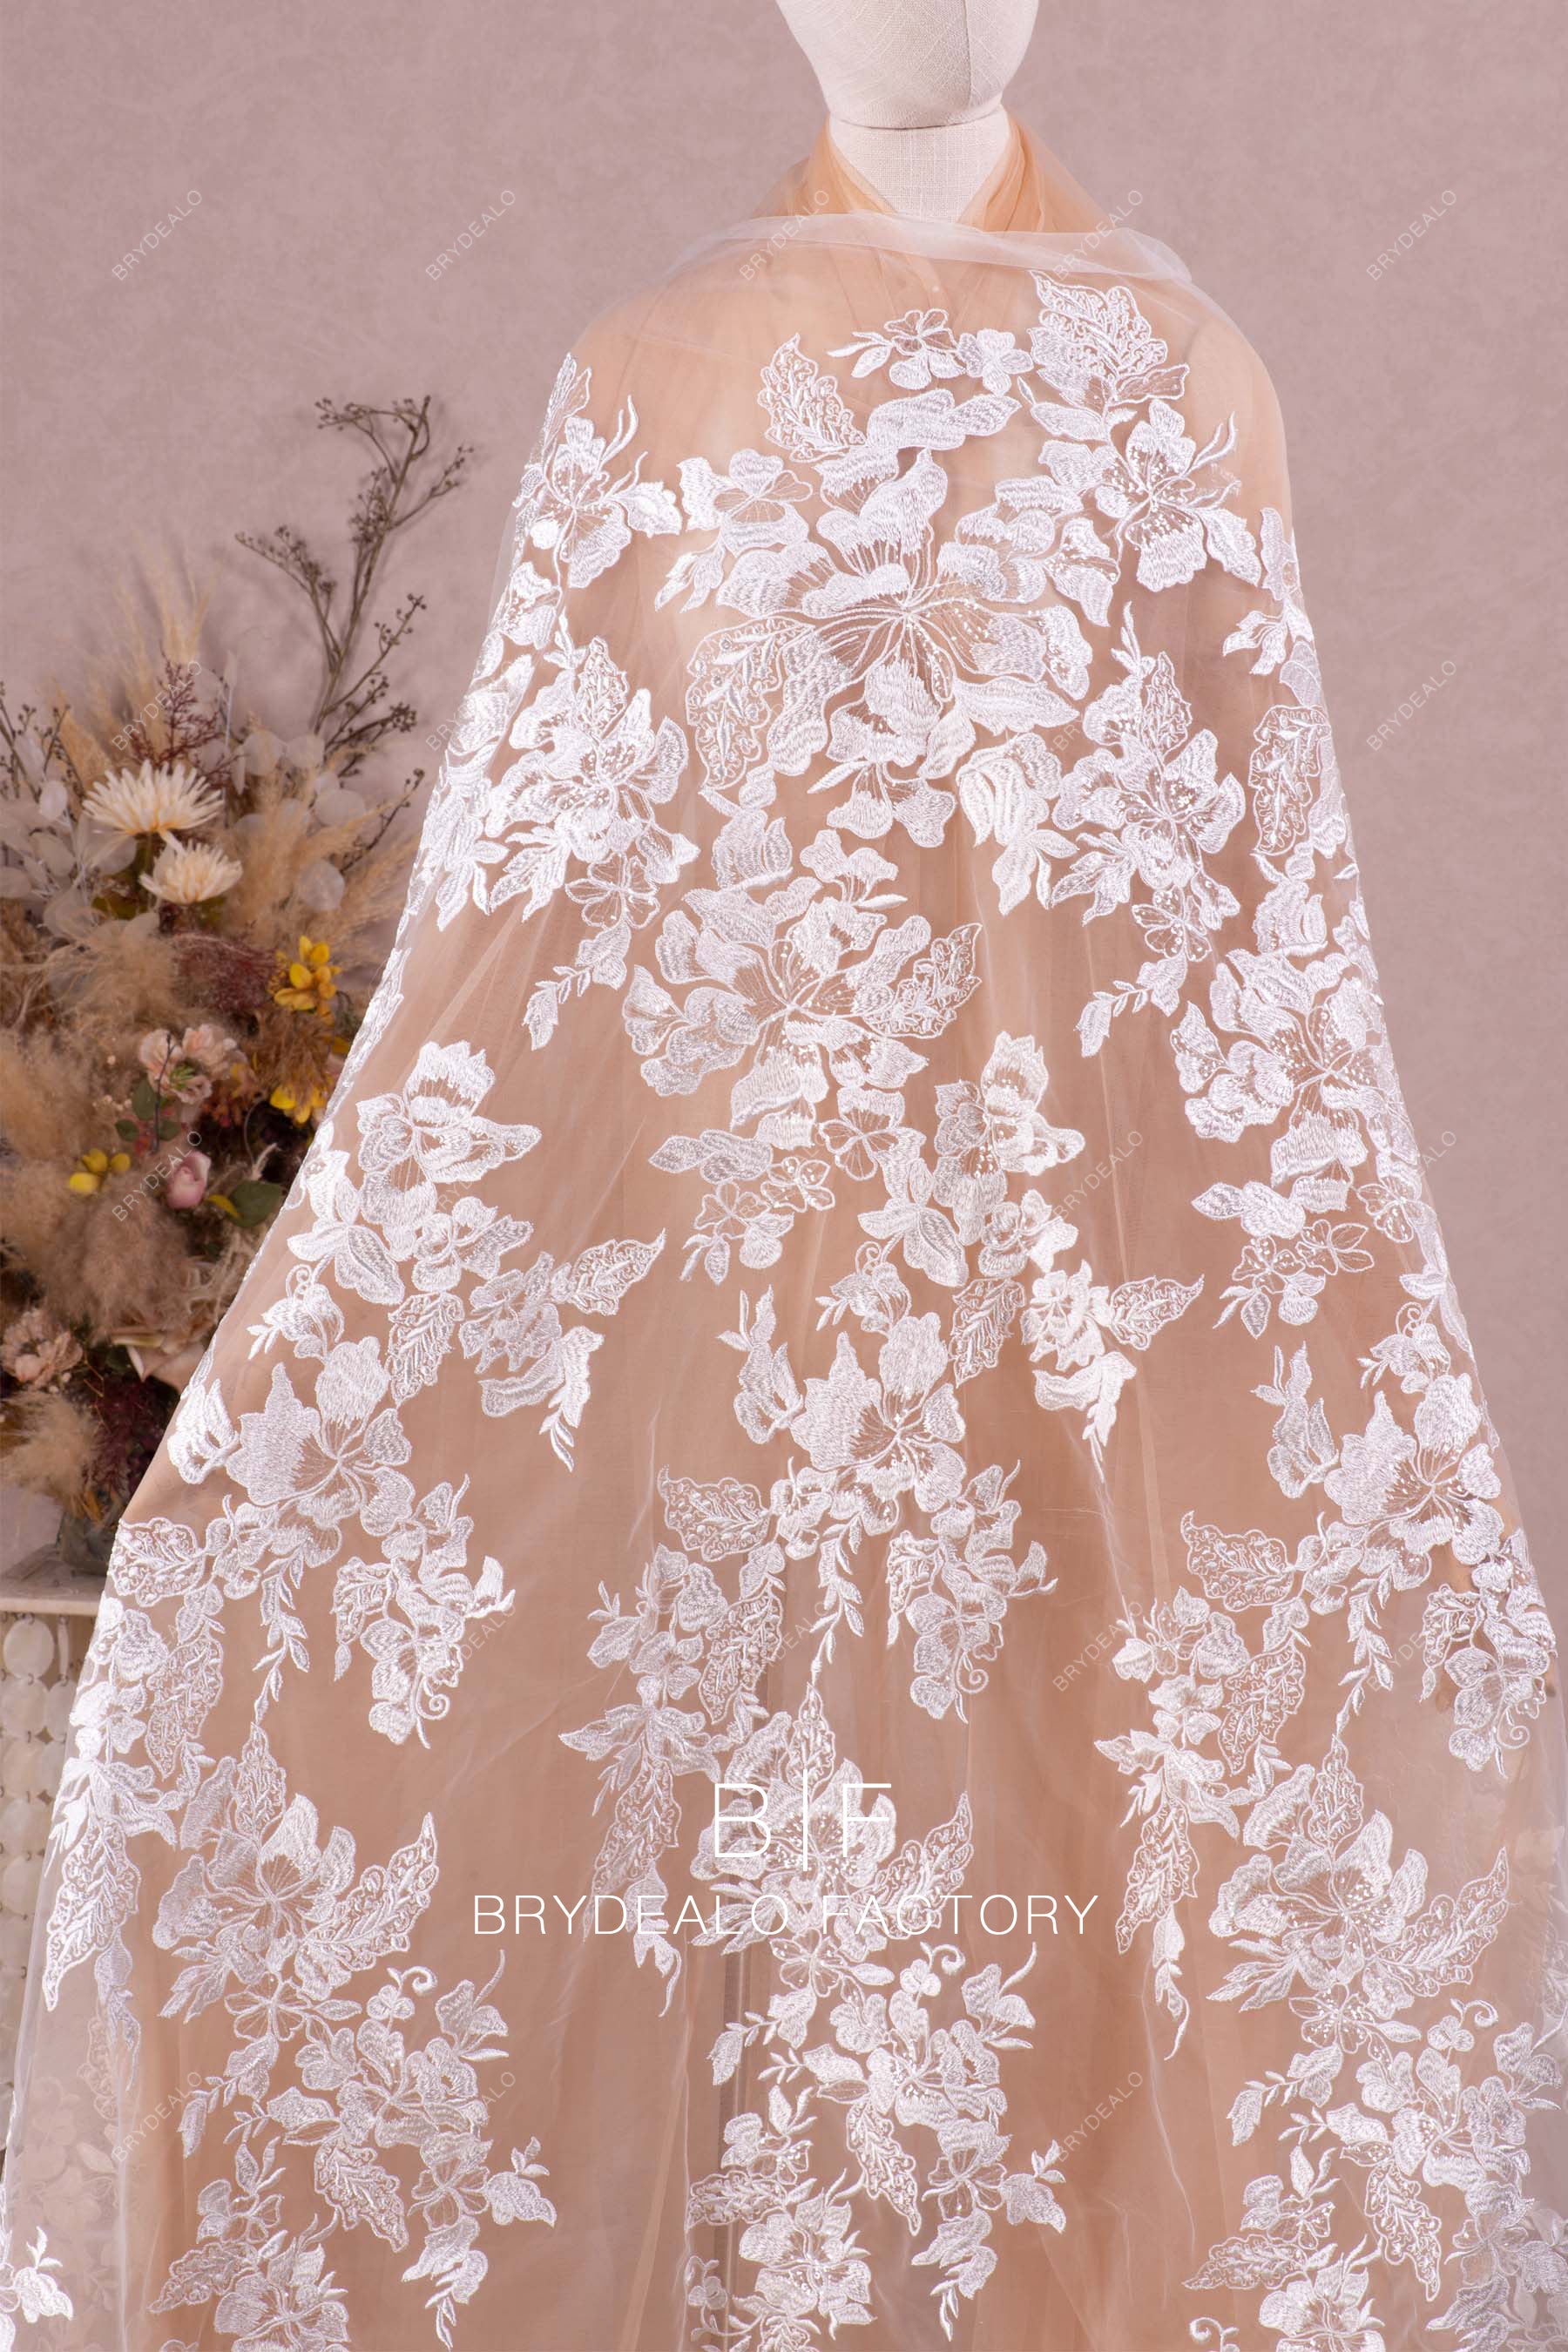 shimmery large flower motif lace for designer dress